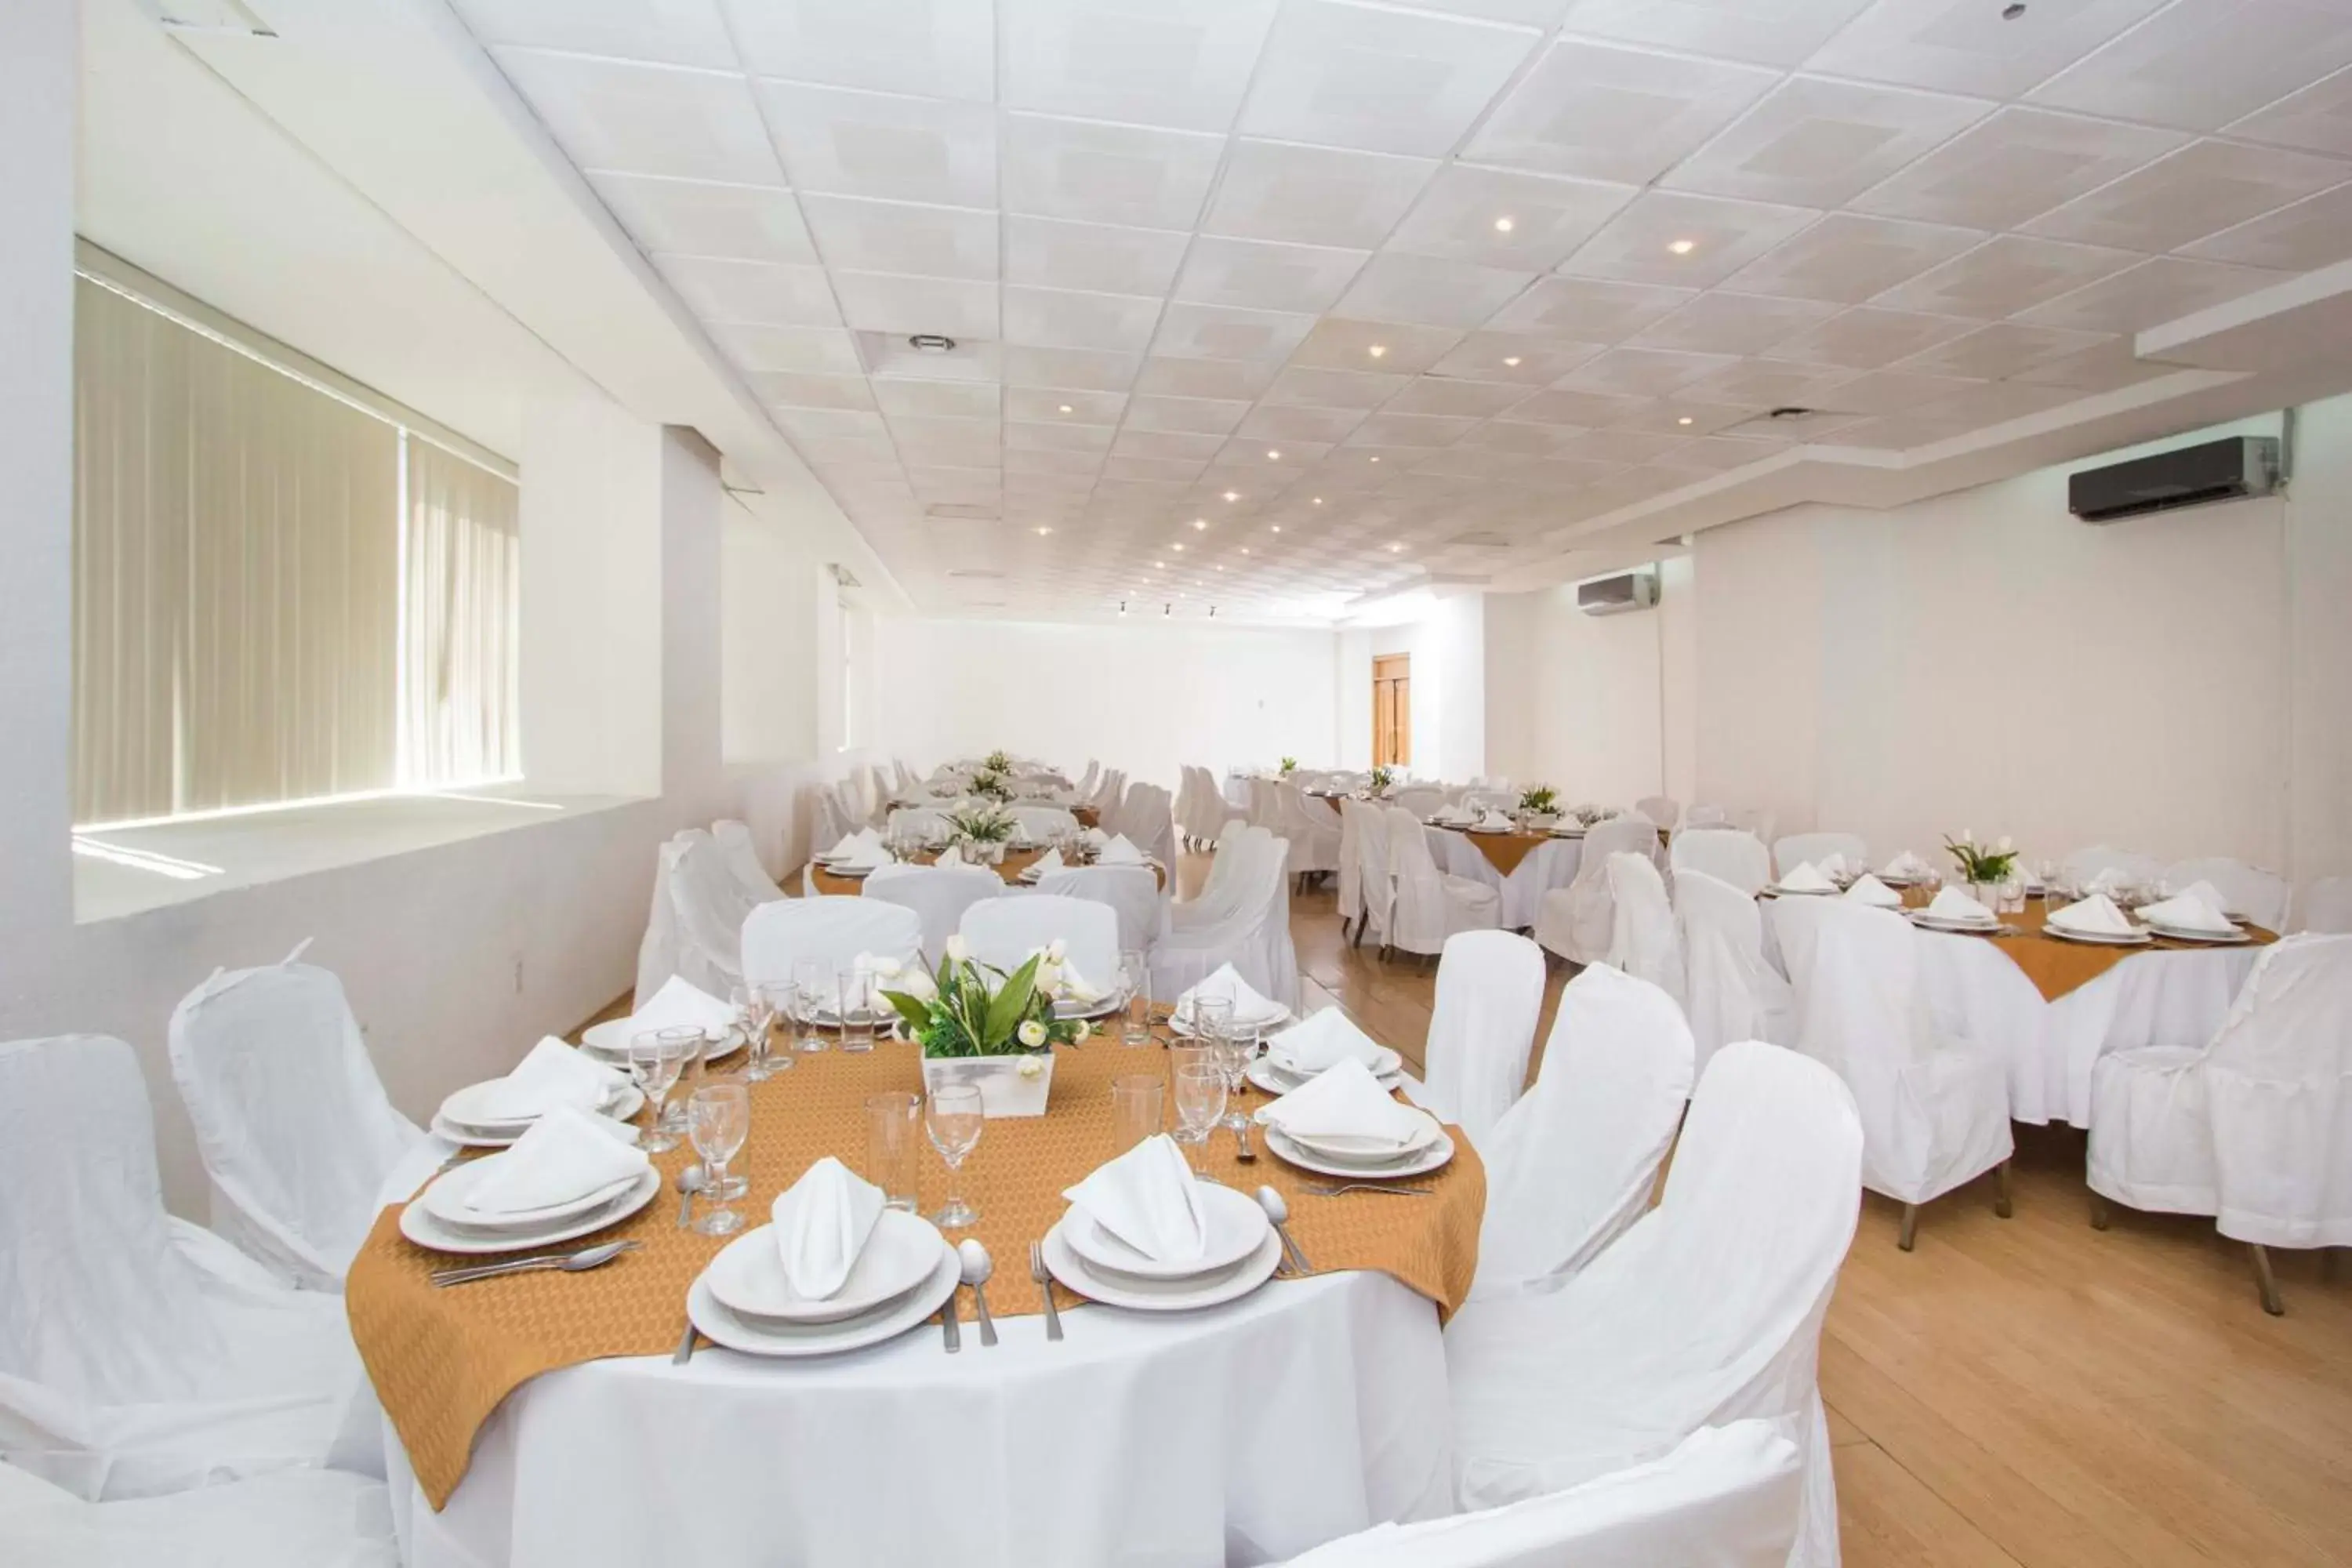 Banquet/Function facilities, Banquet Facilities in Hotel Valle de Mexico Toreo